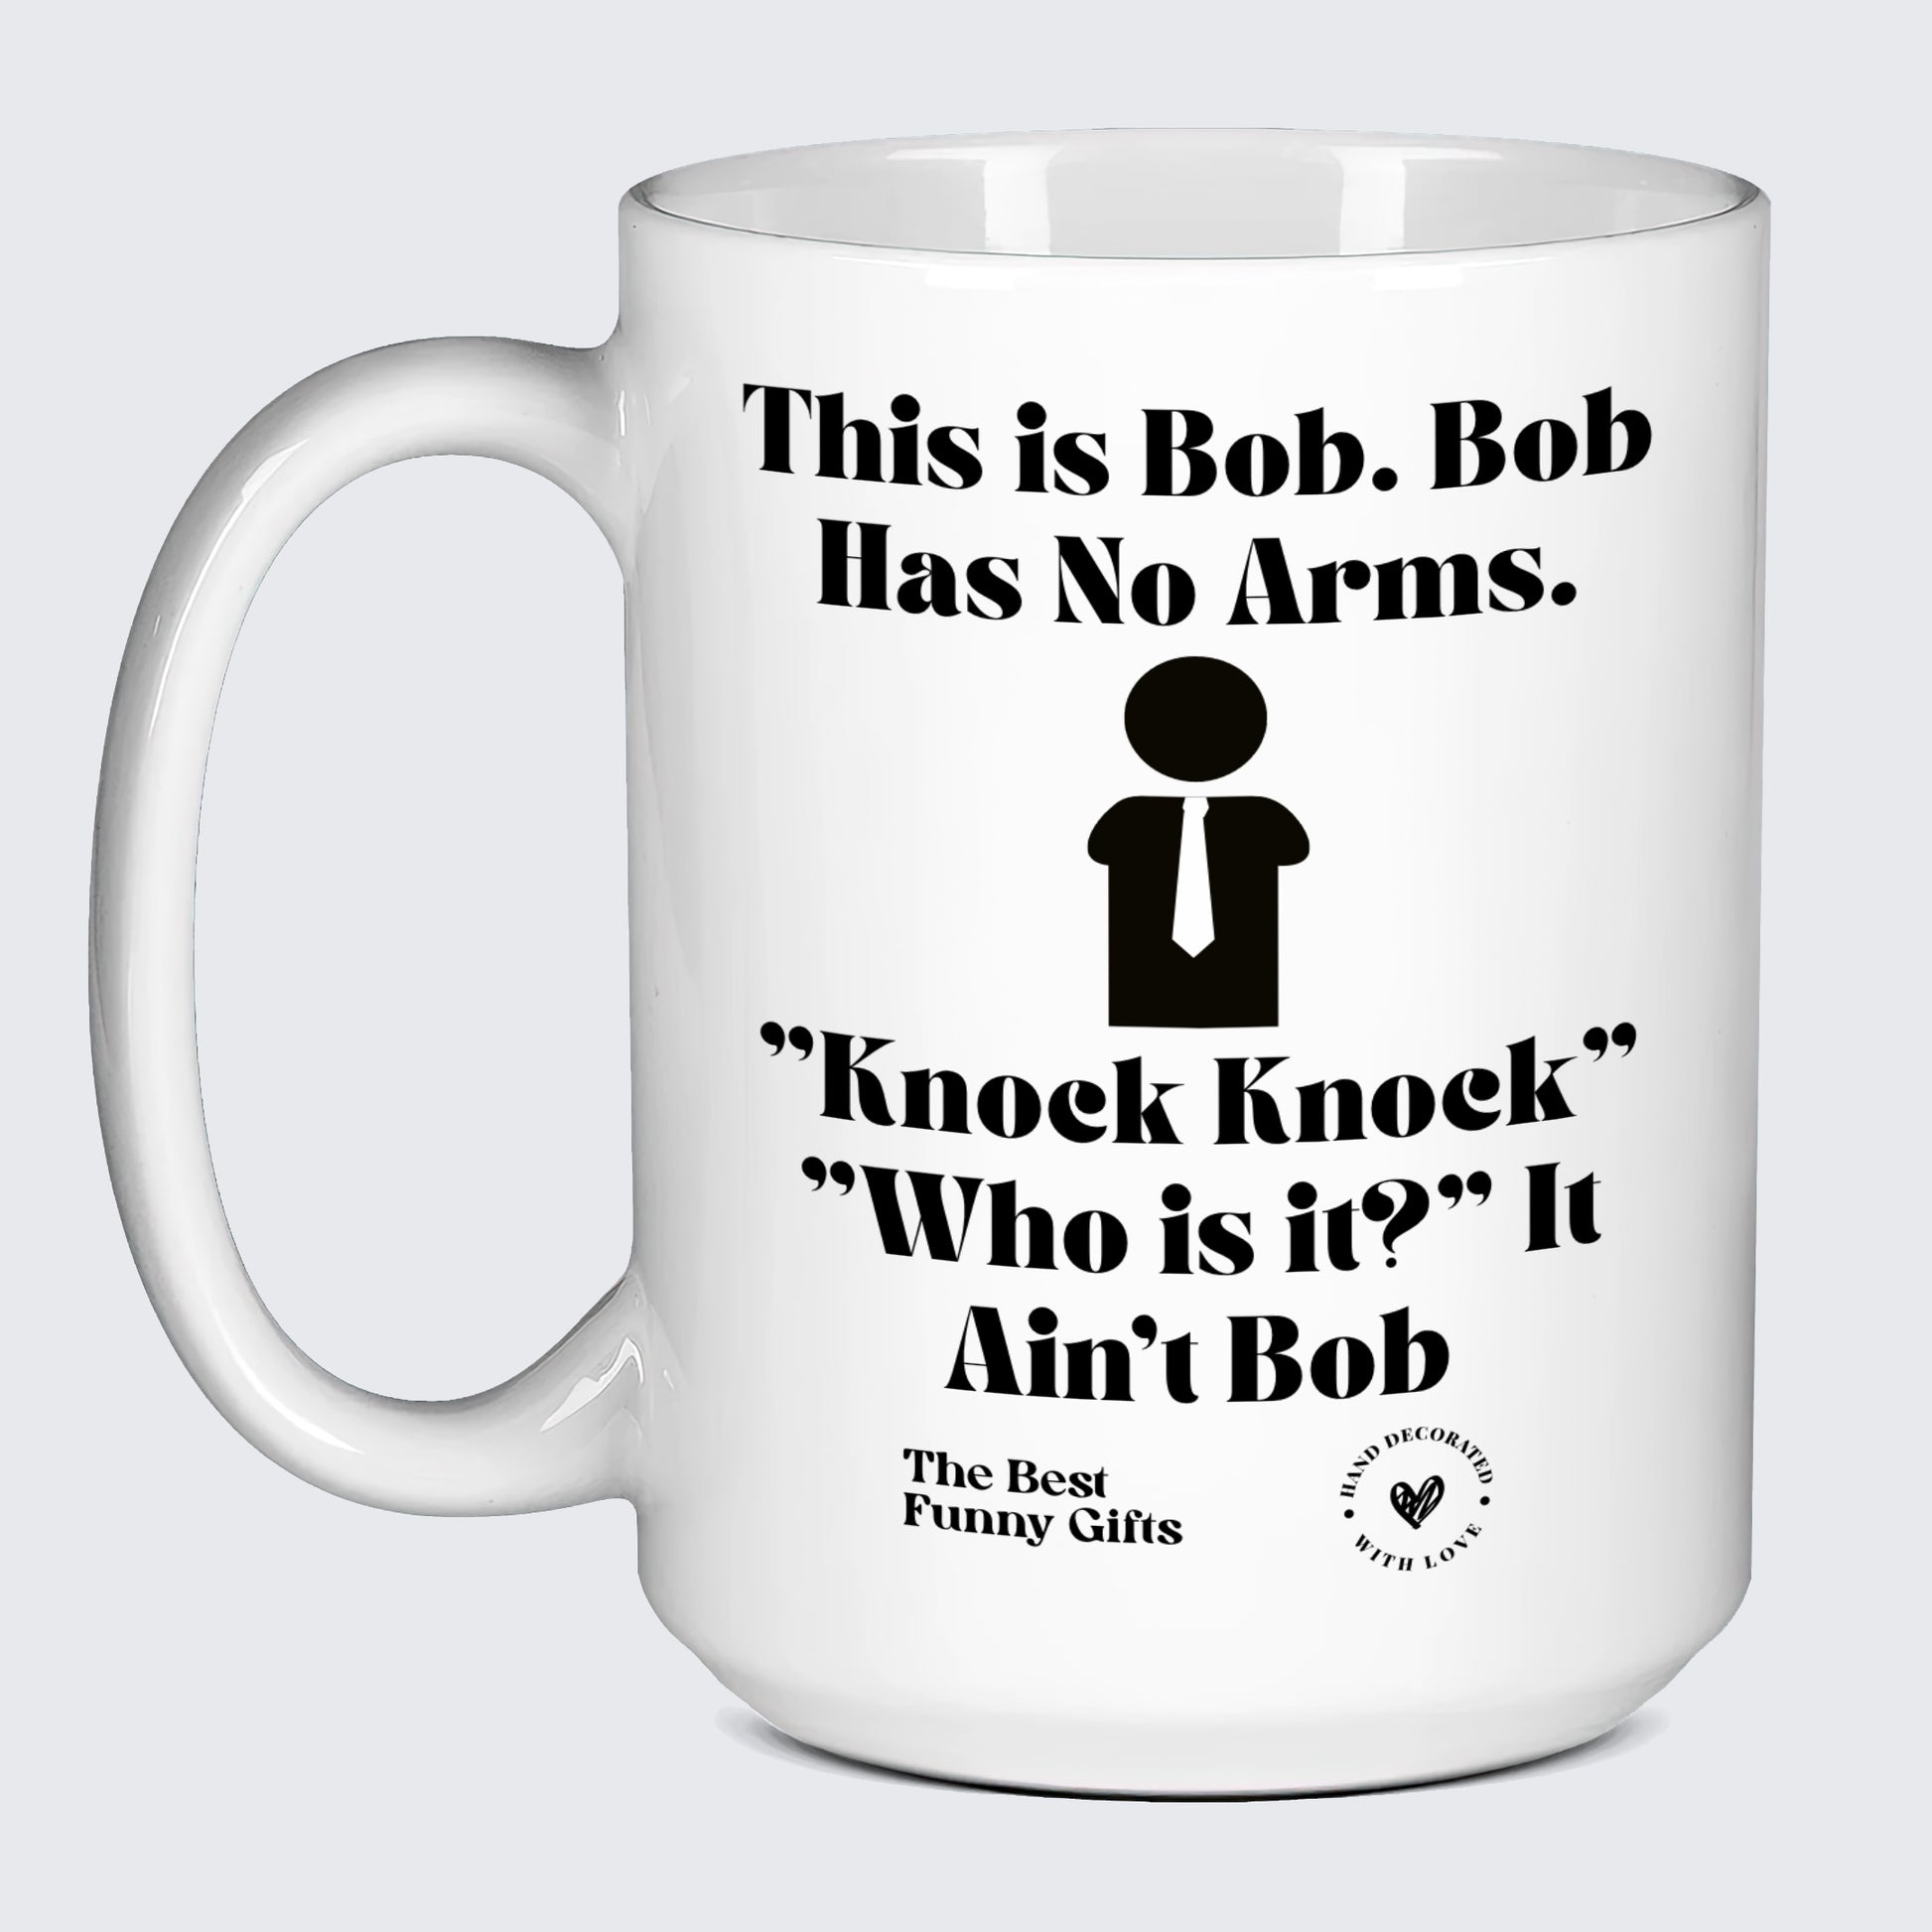 Funny Mugs - This is Bob. Bob Has No Arms. Knock Knock" "Who is It?" It Ain't Bob - Coffee Mug"